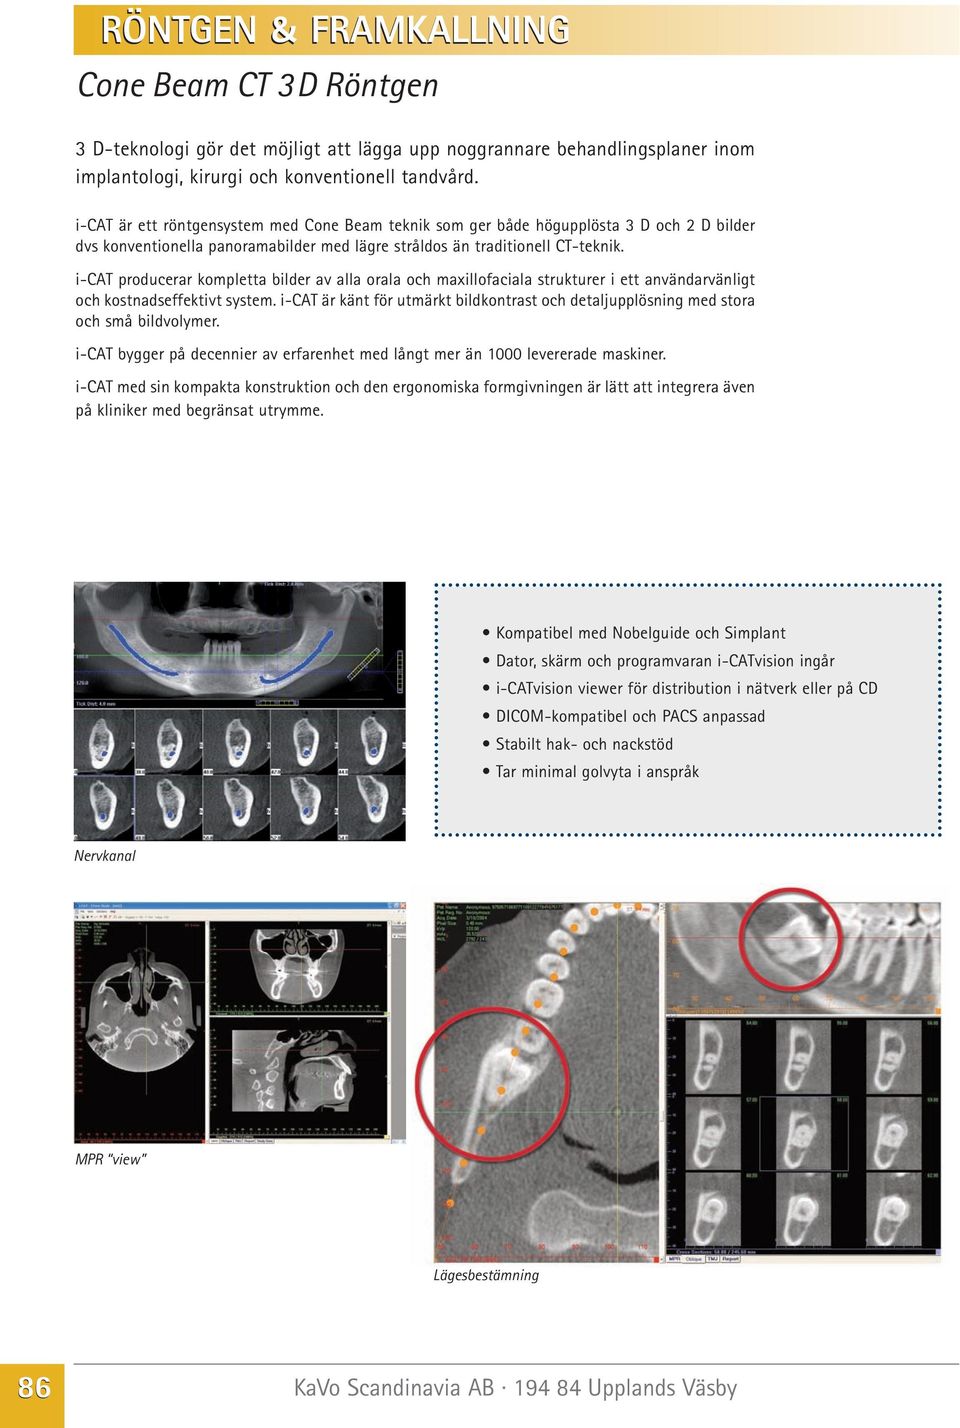 i-cat producerar kompletta bilder av alla orala och maxillofaciala strukturer i ett användarvänligt och kostnadseffektivt system.